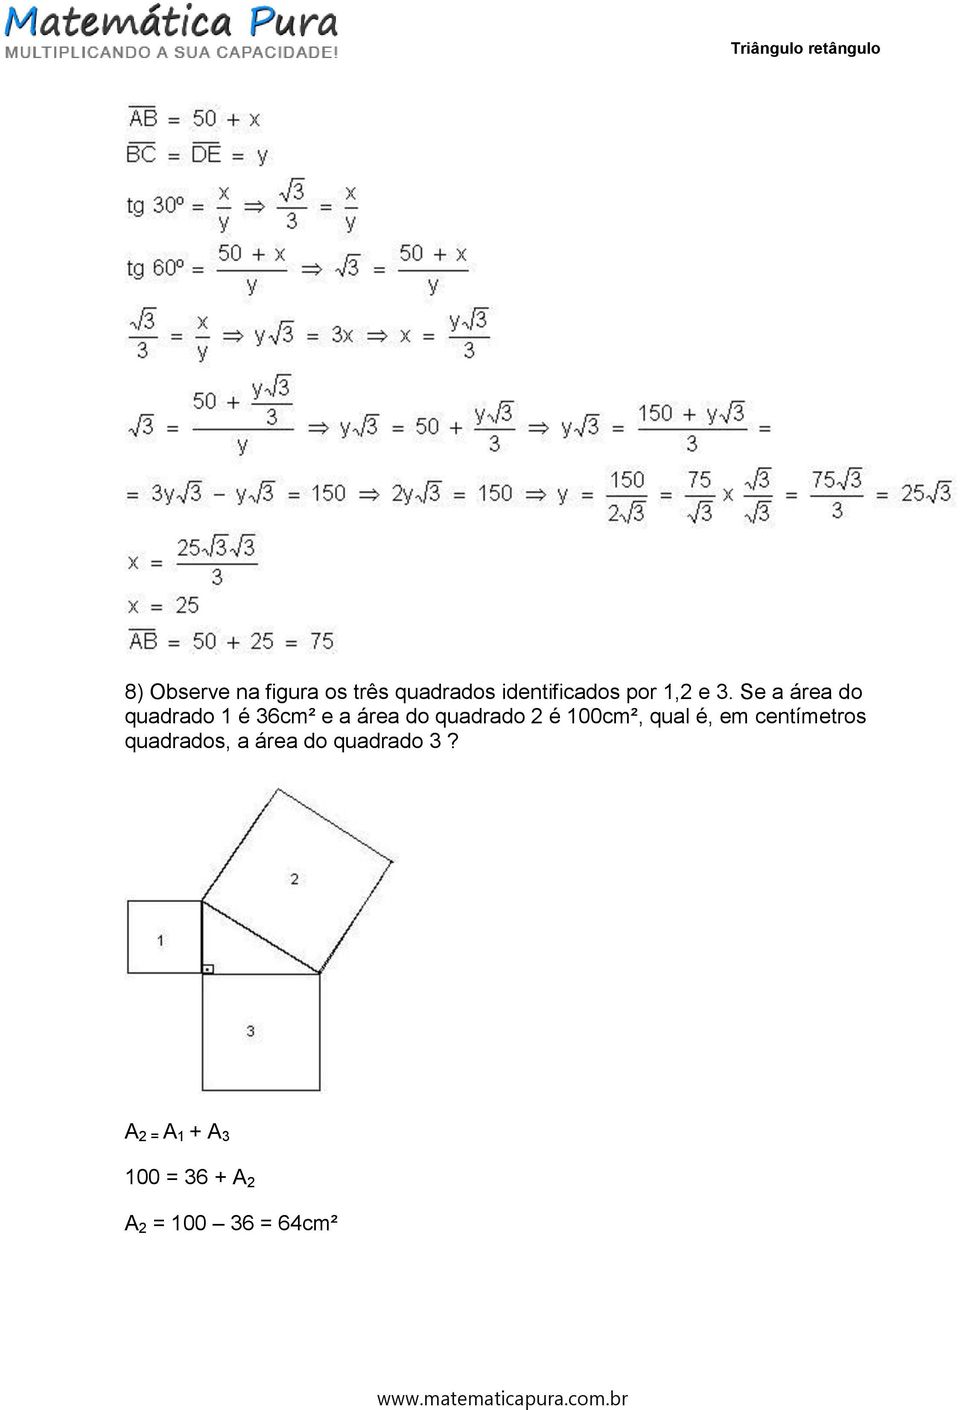 Se a área do quadrado 1 é 36cm² e a área do quadrado 2 é